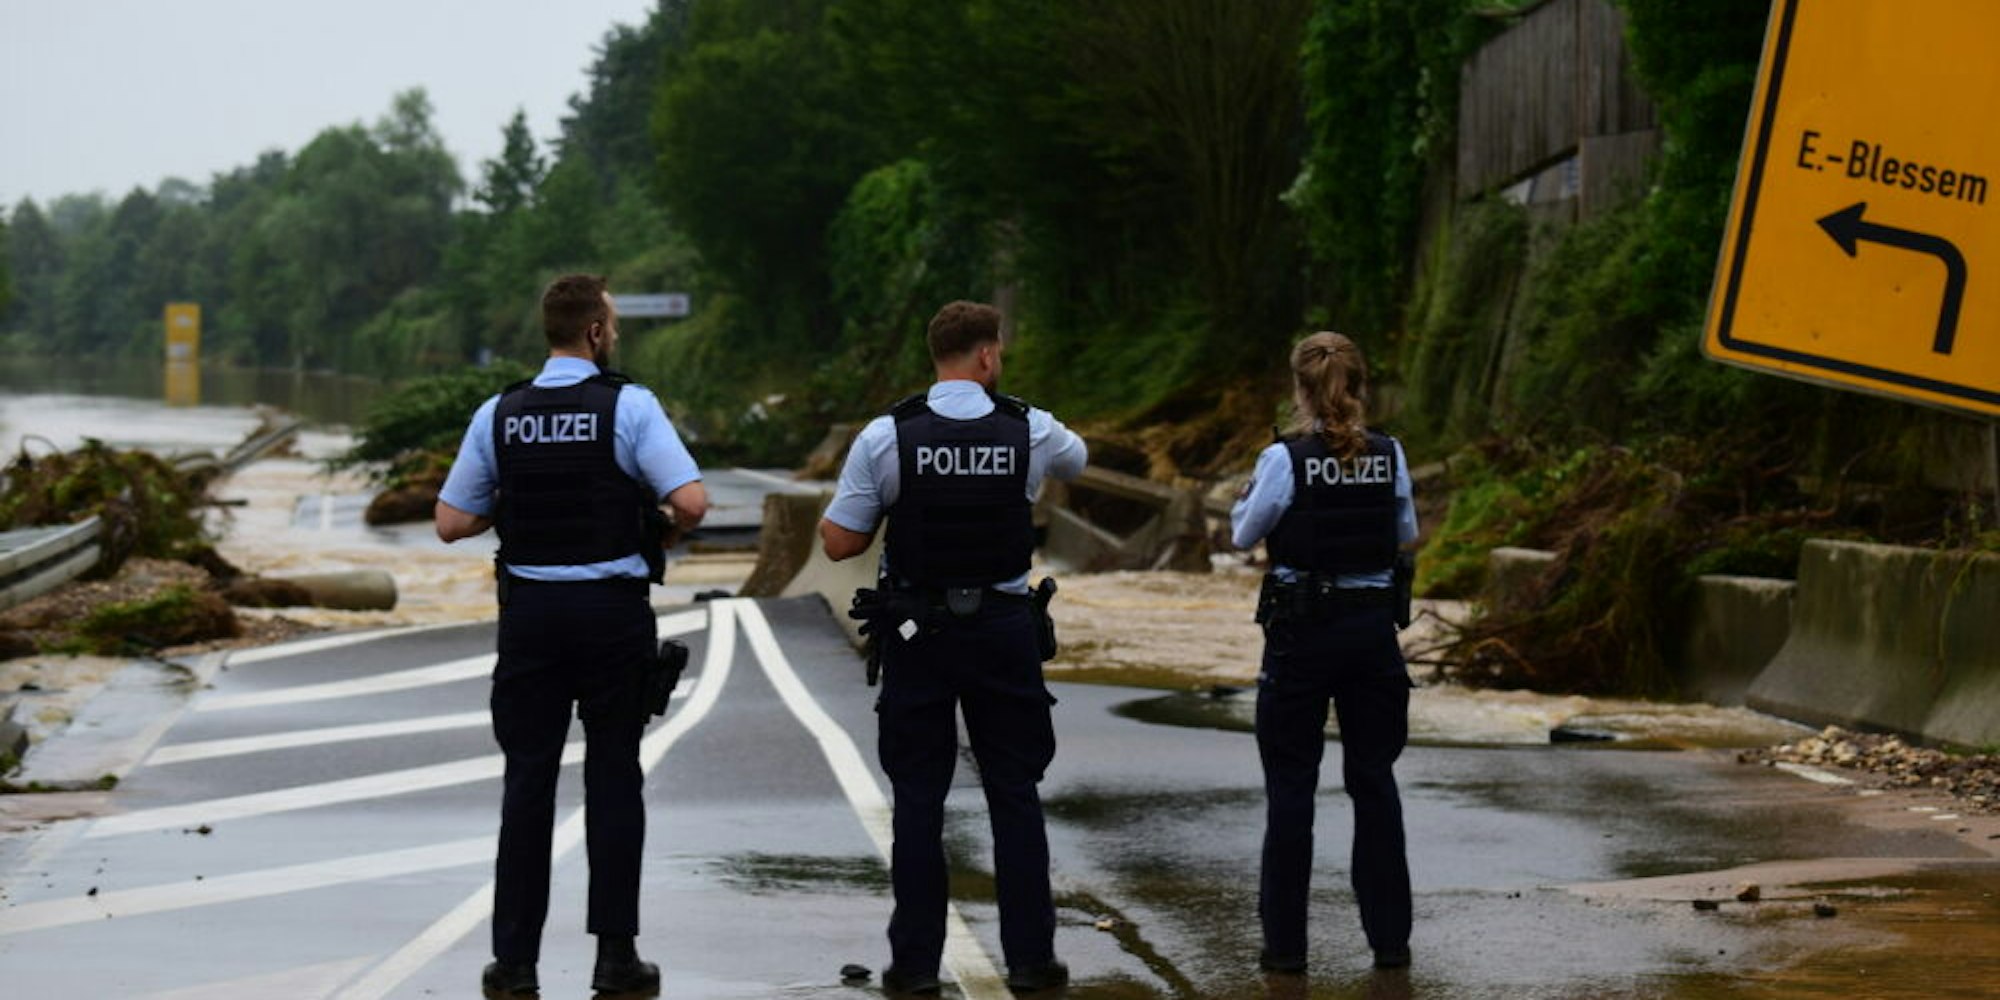 Die Polizei im Einsatz auf der Bundesstraße 265 bei Erftstadt-Blessem nach der Flutwelle im Juli.